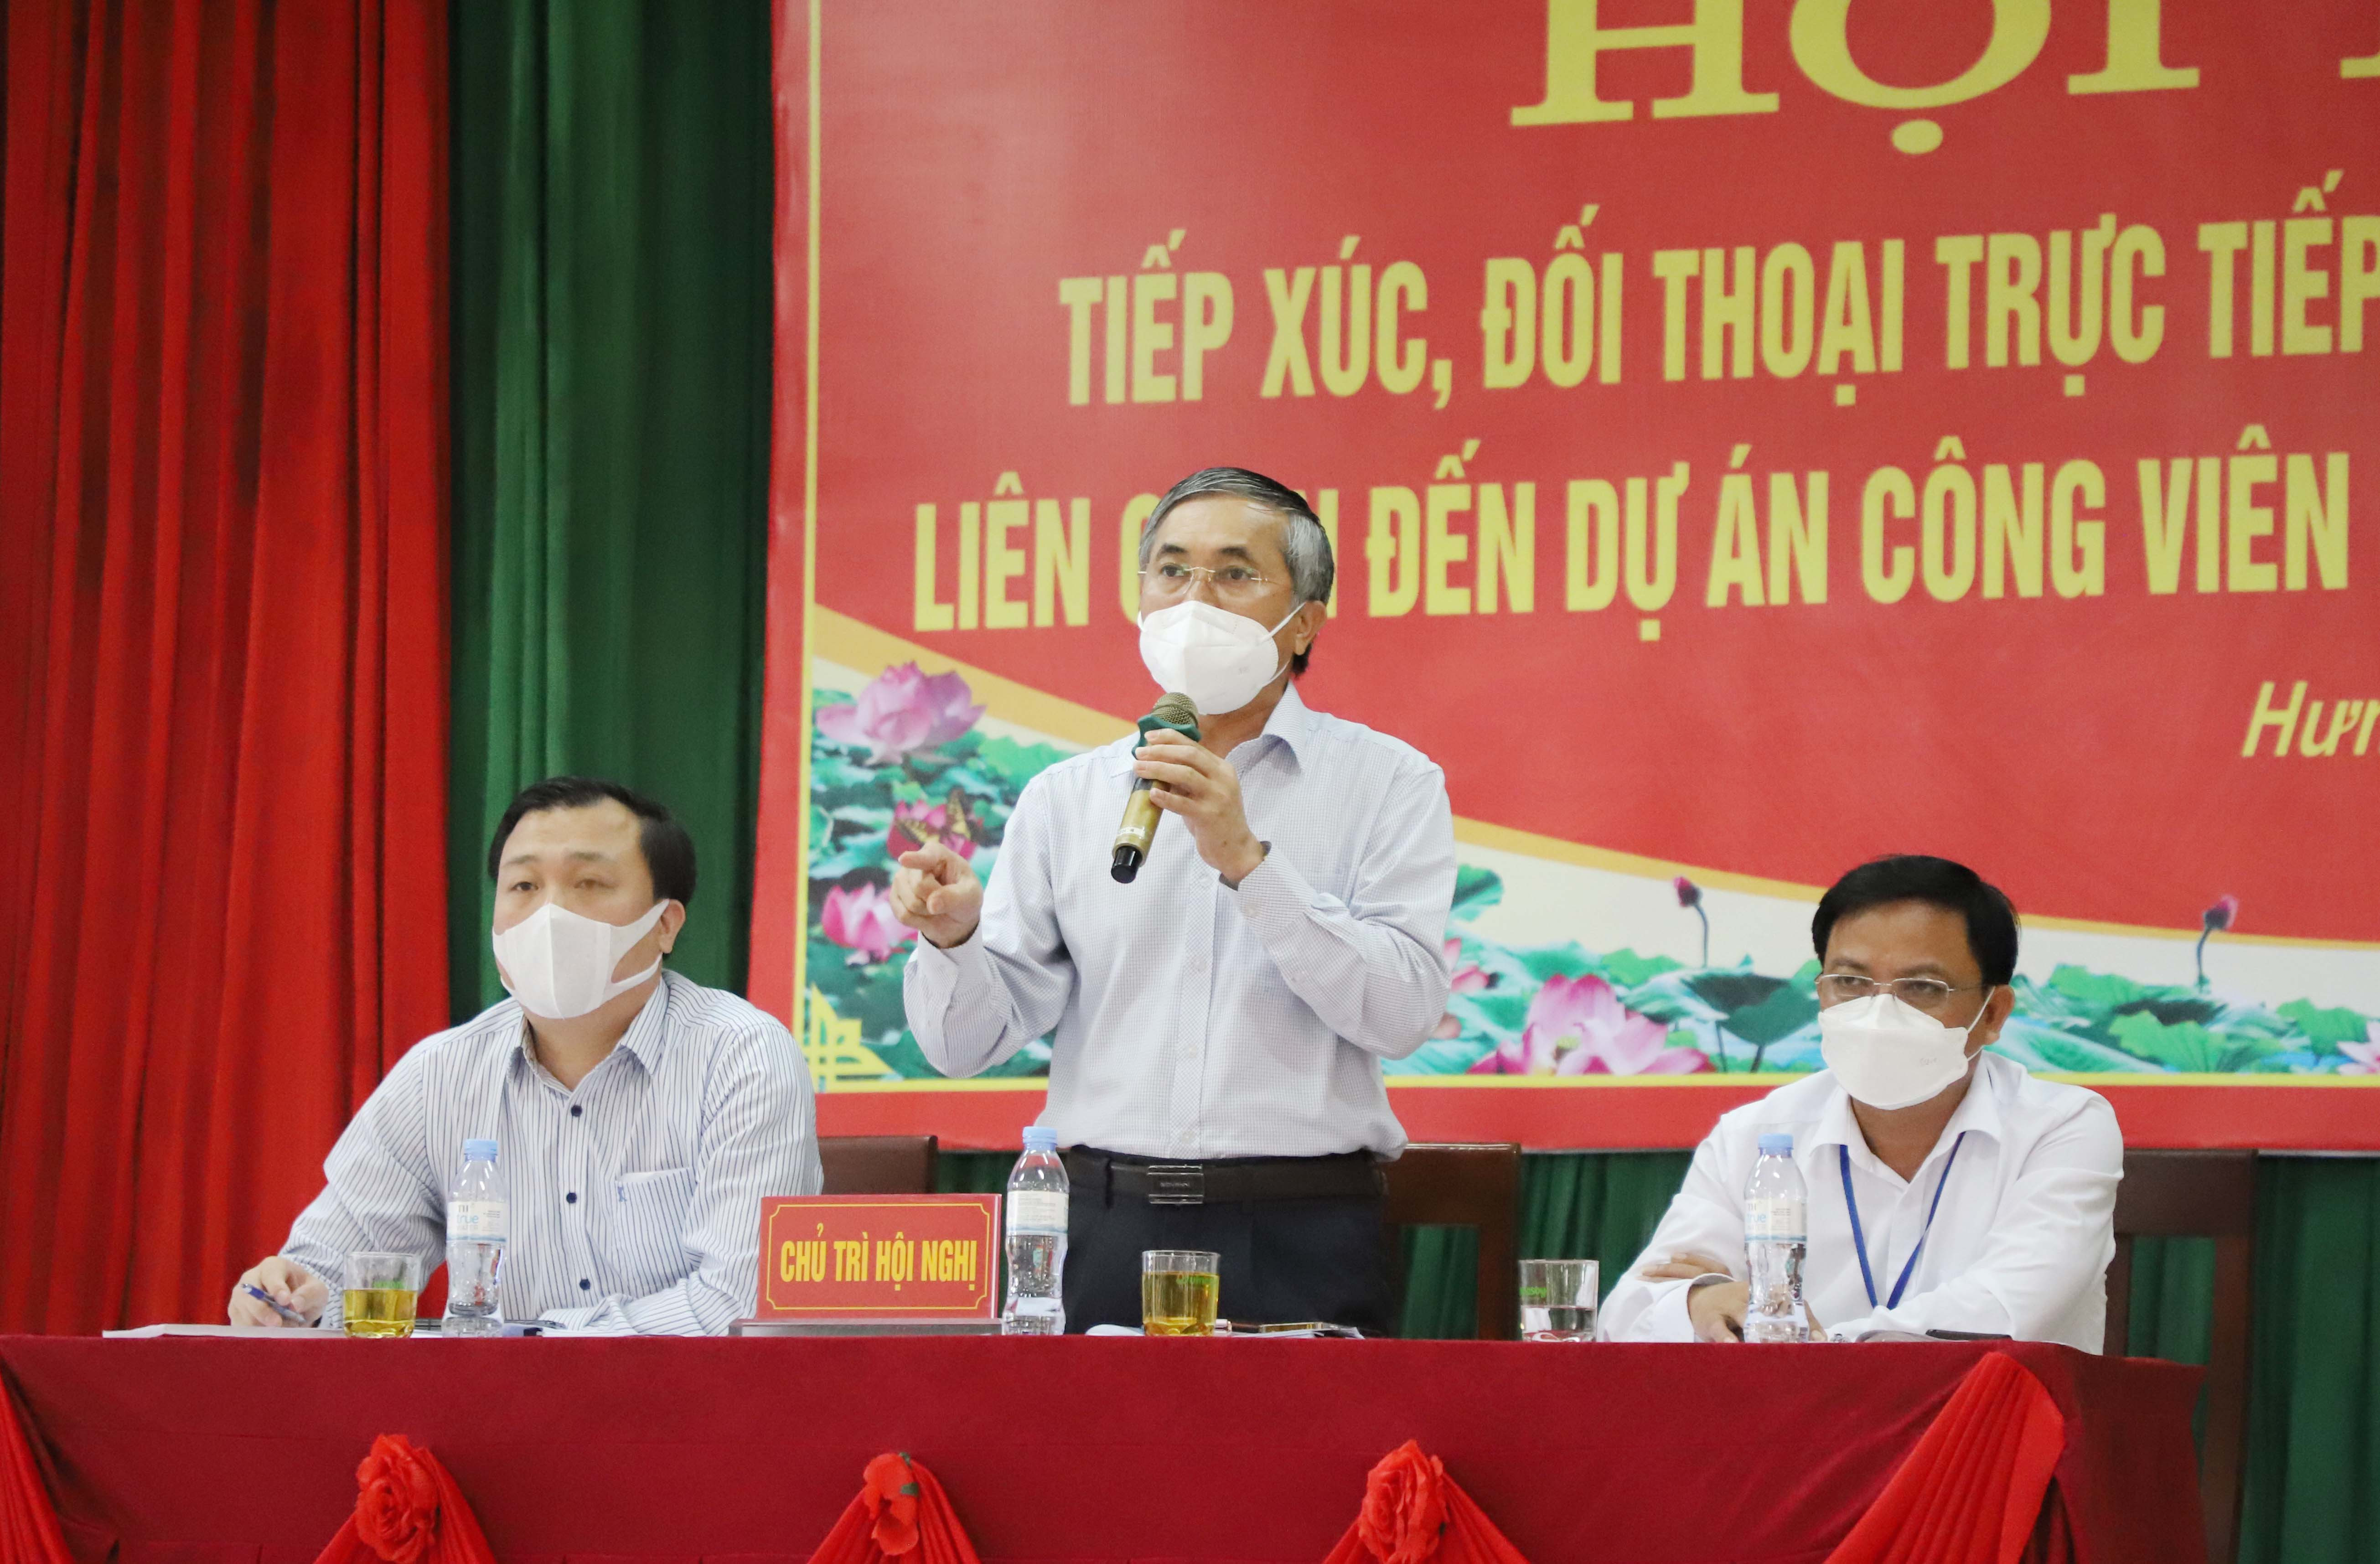 Đồng chí Lê Ngọc Hoa - Phó Chủ tịch UBND tỉnh kết luận buổi đối thoại. Ảnh: Phạm Bằng